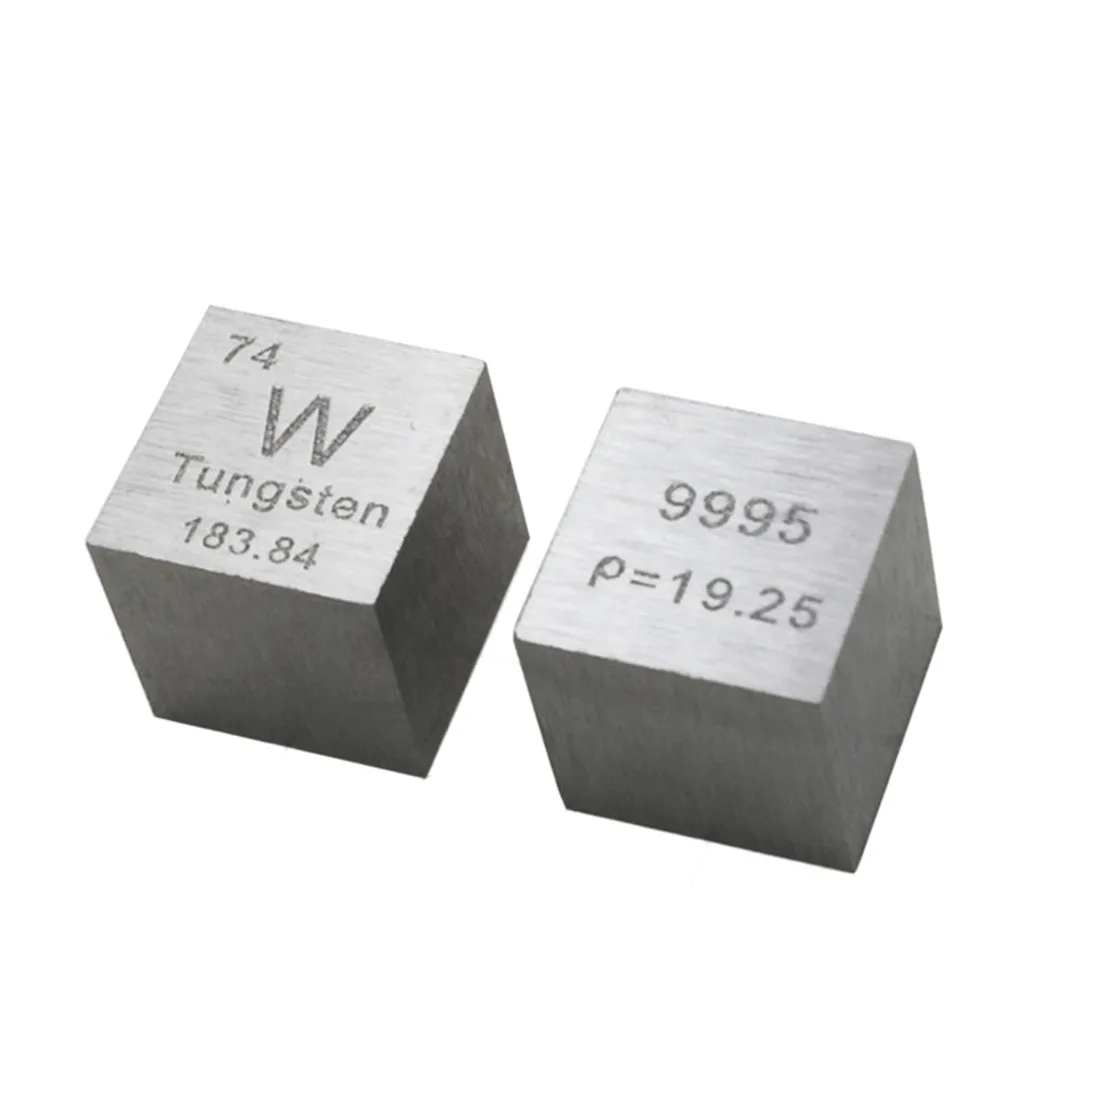 10X10X10 мм Высокая чистая проволока Wolfram Таблица элементов куб для исследования лаборатории промышленной коллекции (W≥99. 9%)